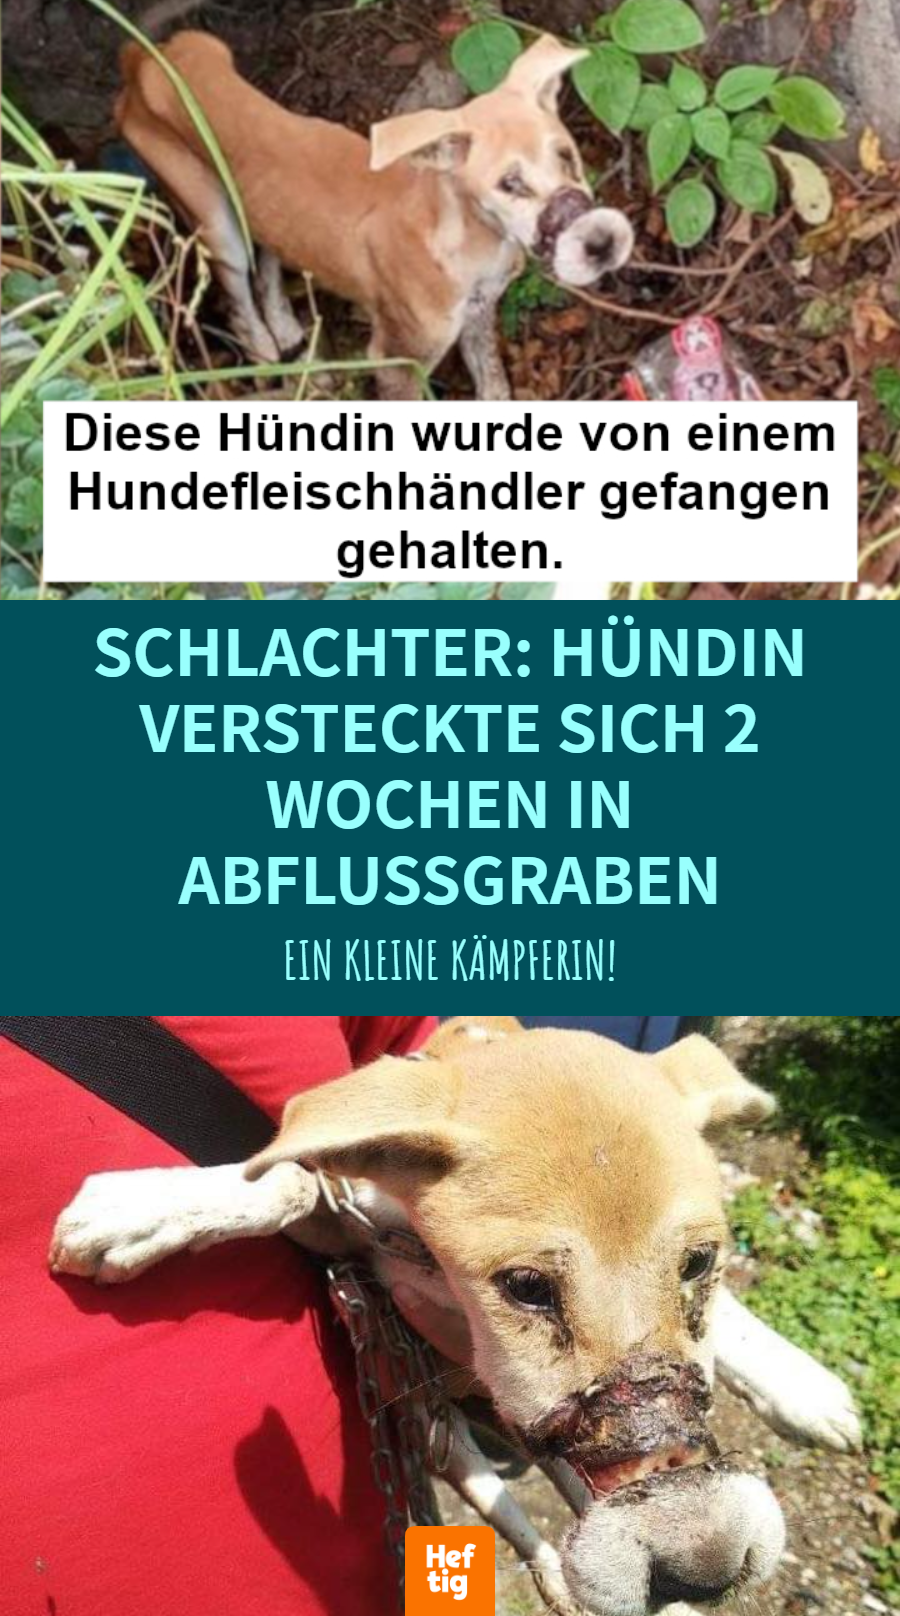 Tierrettung: Gefesselte Hündin flieht von Hundefarm